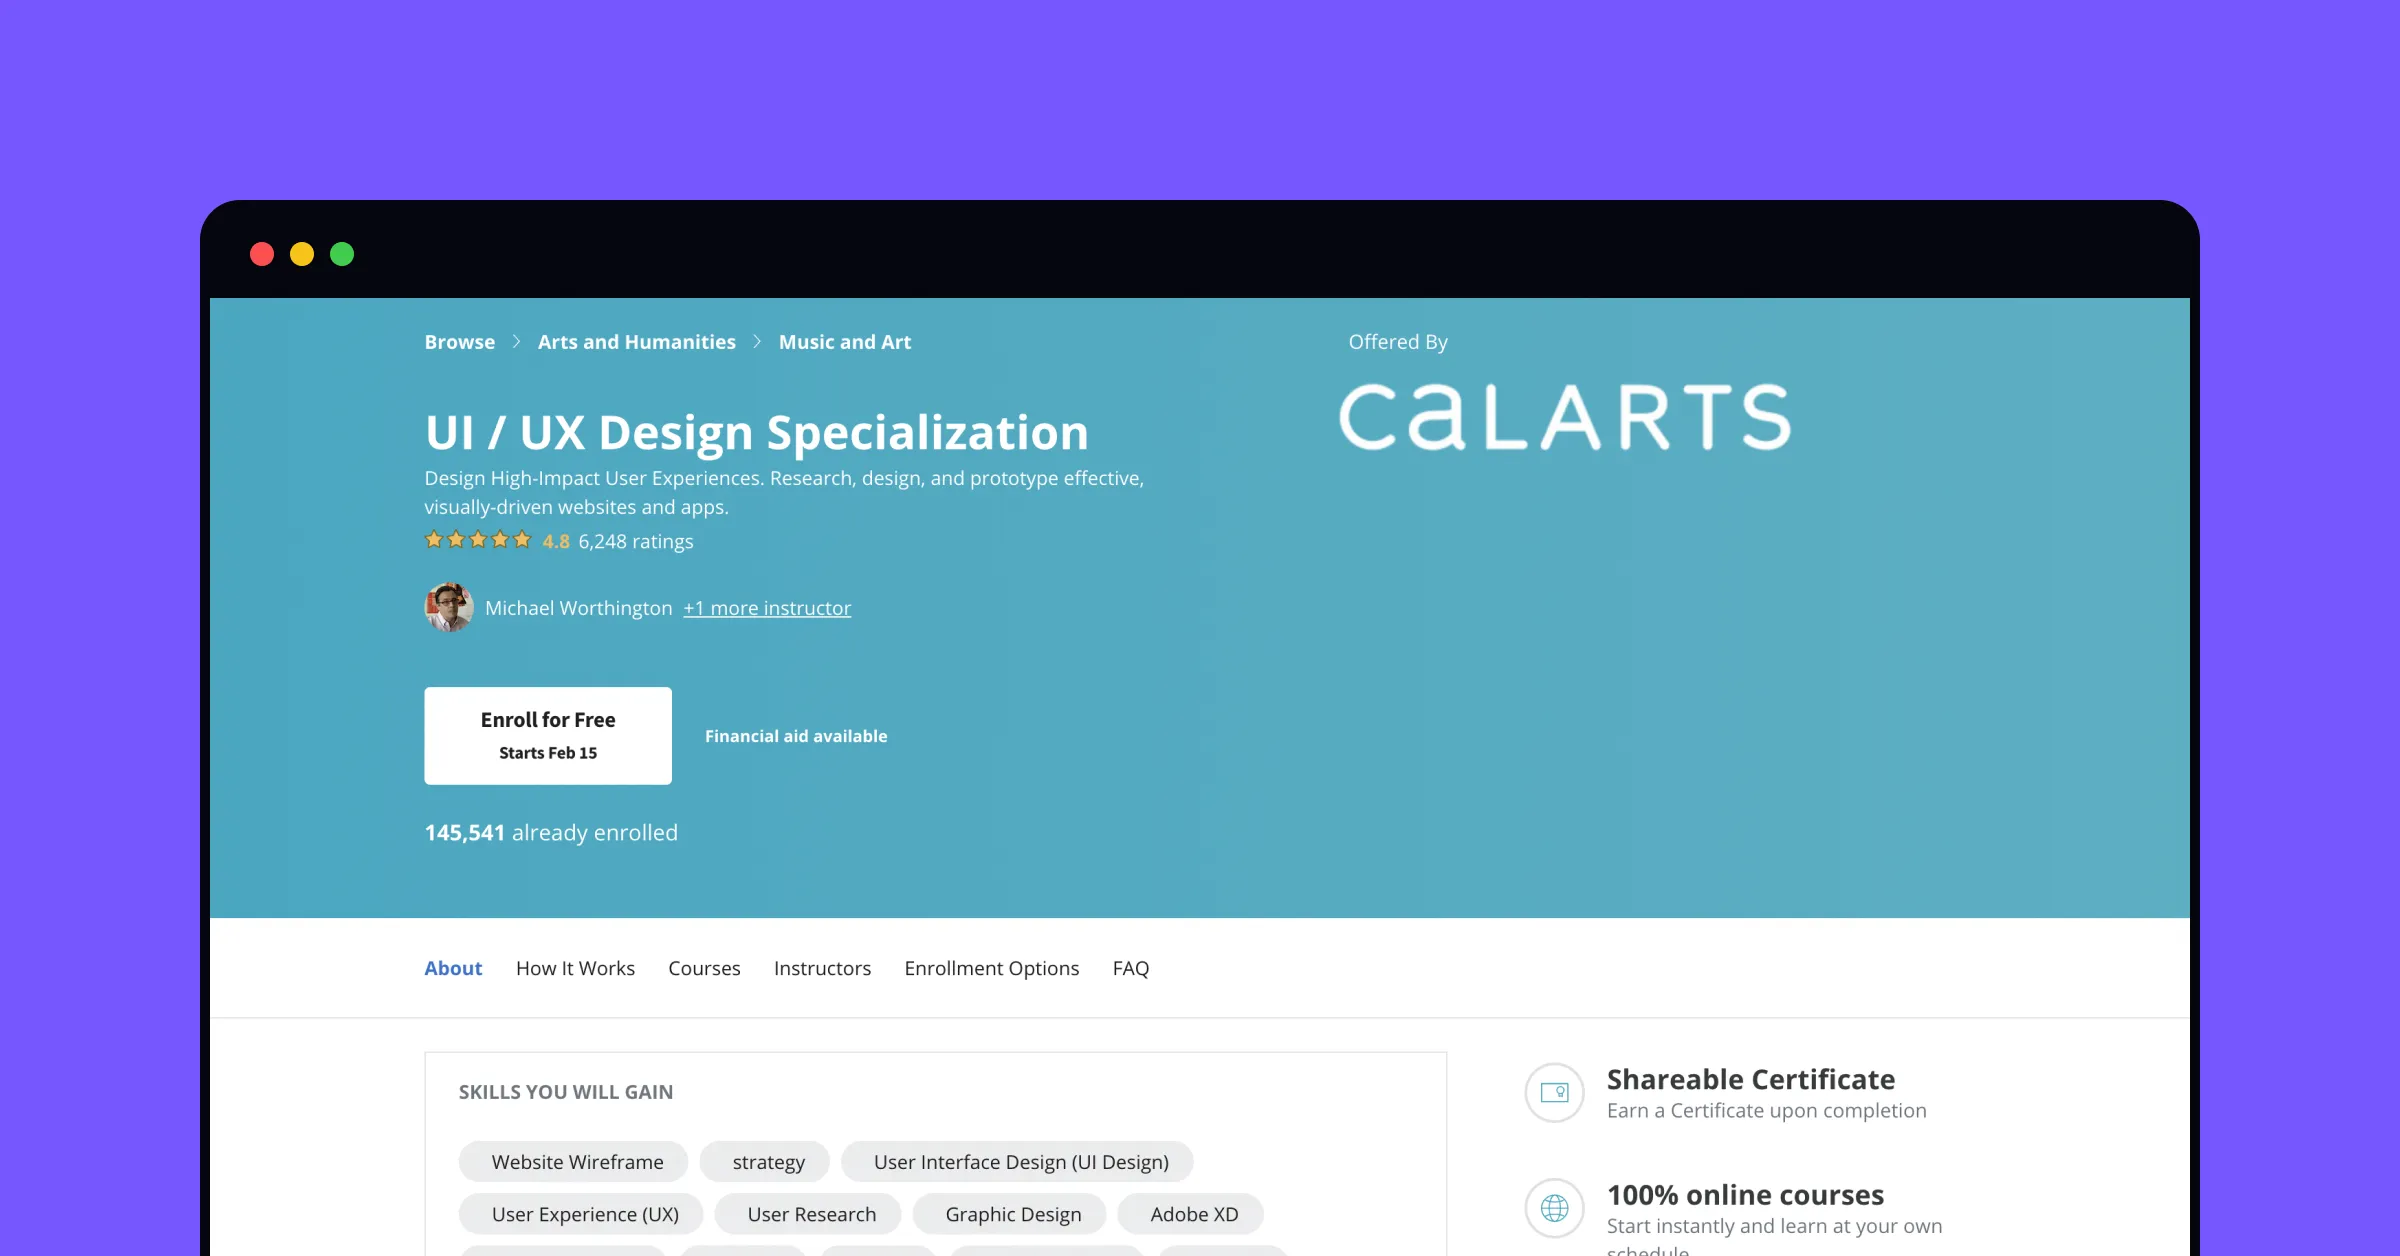 UI/UX Design Specialization CalArts